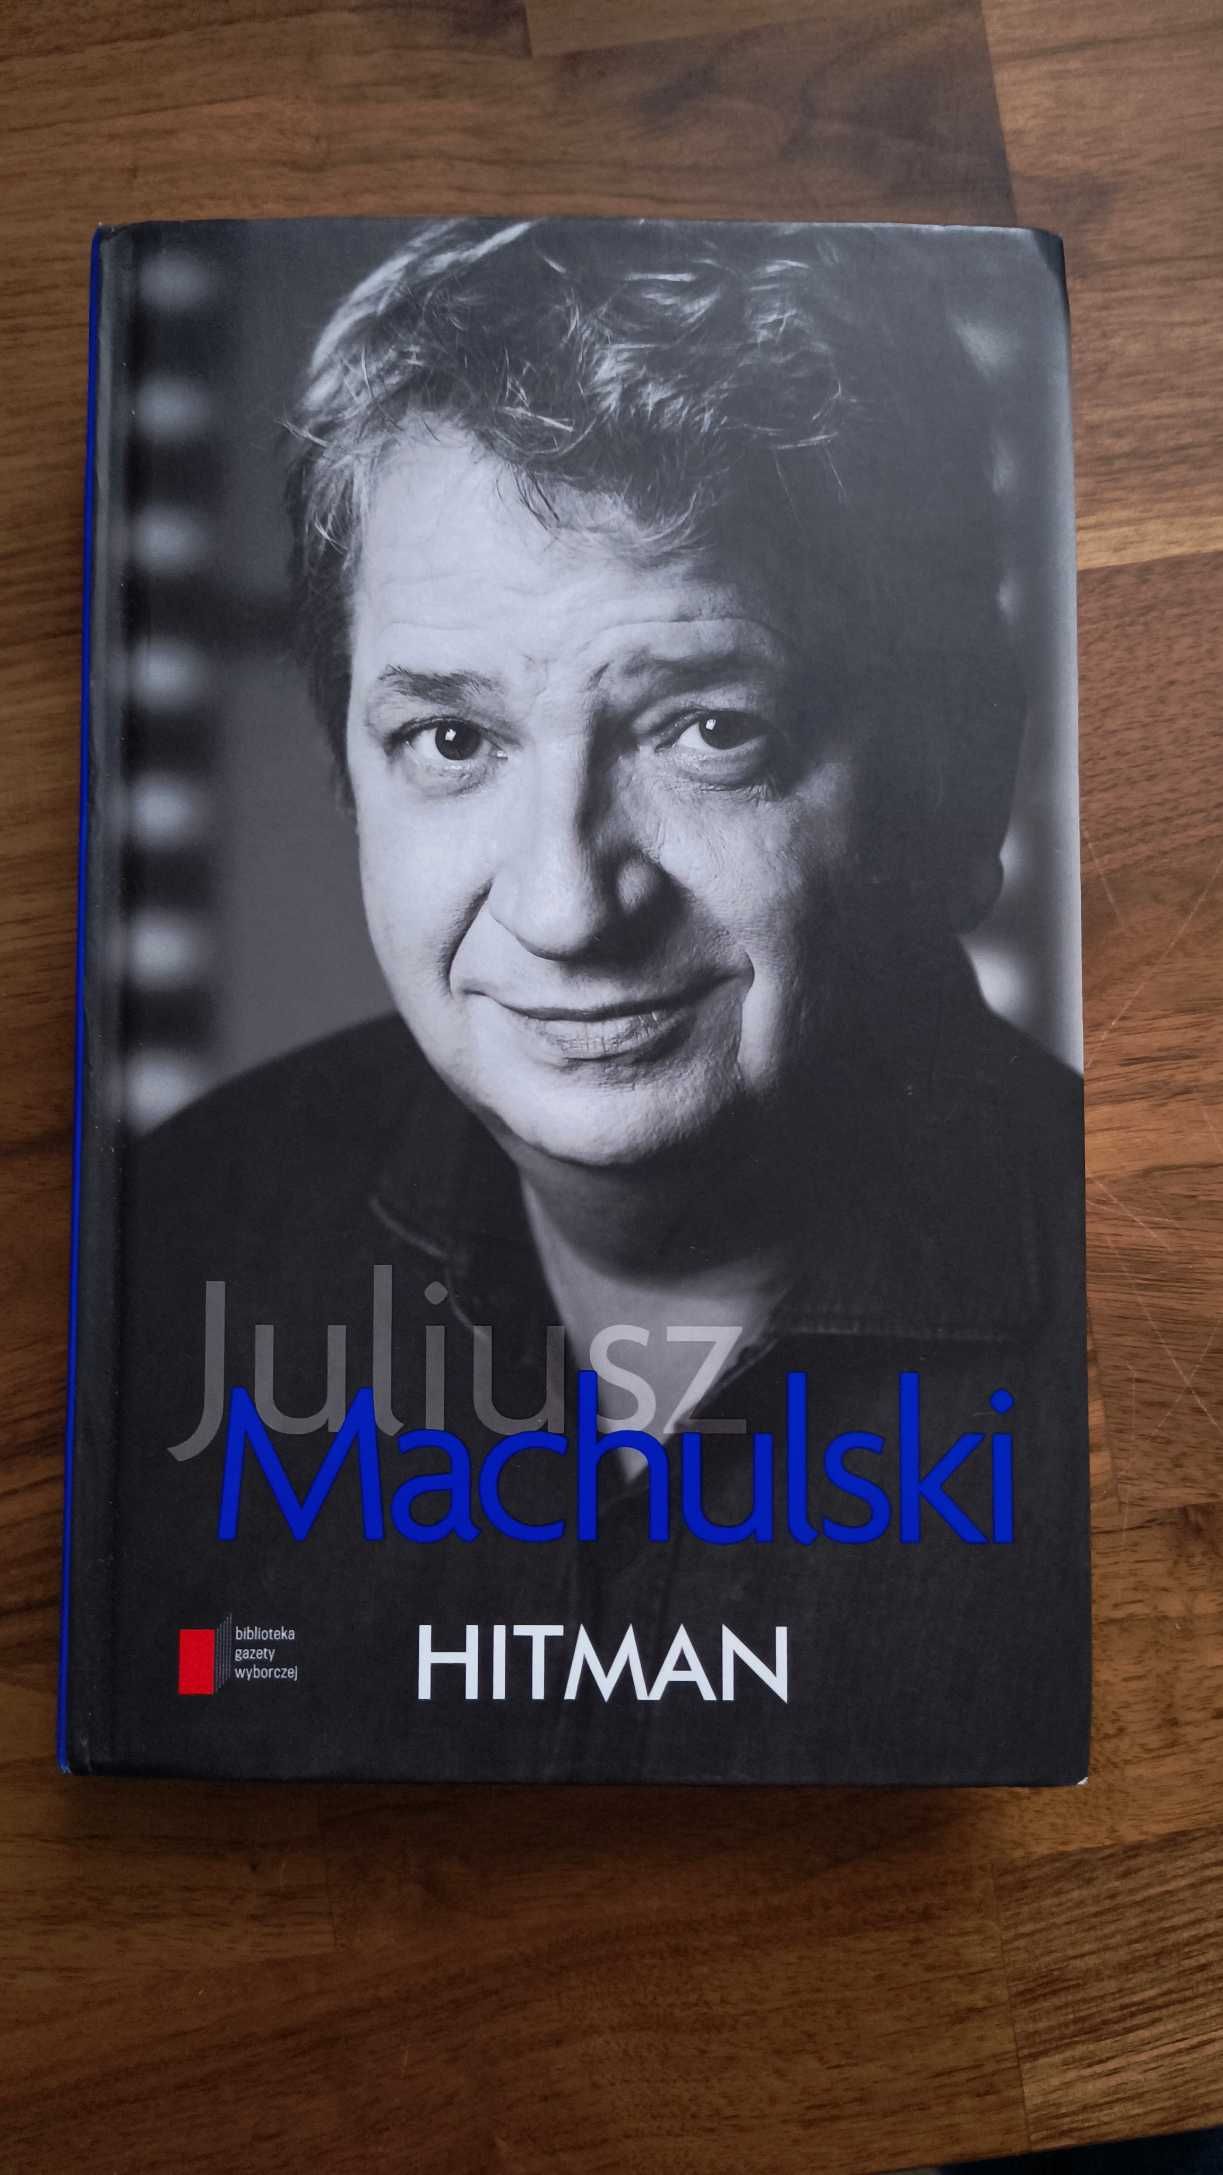 "Hitman" Juliusz Machulski